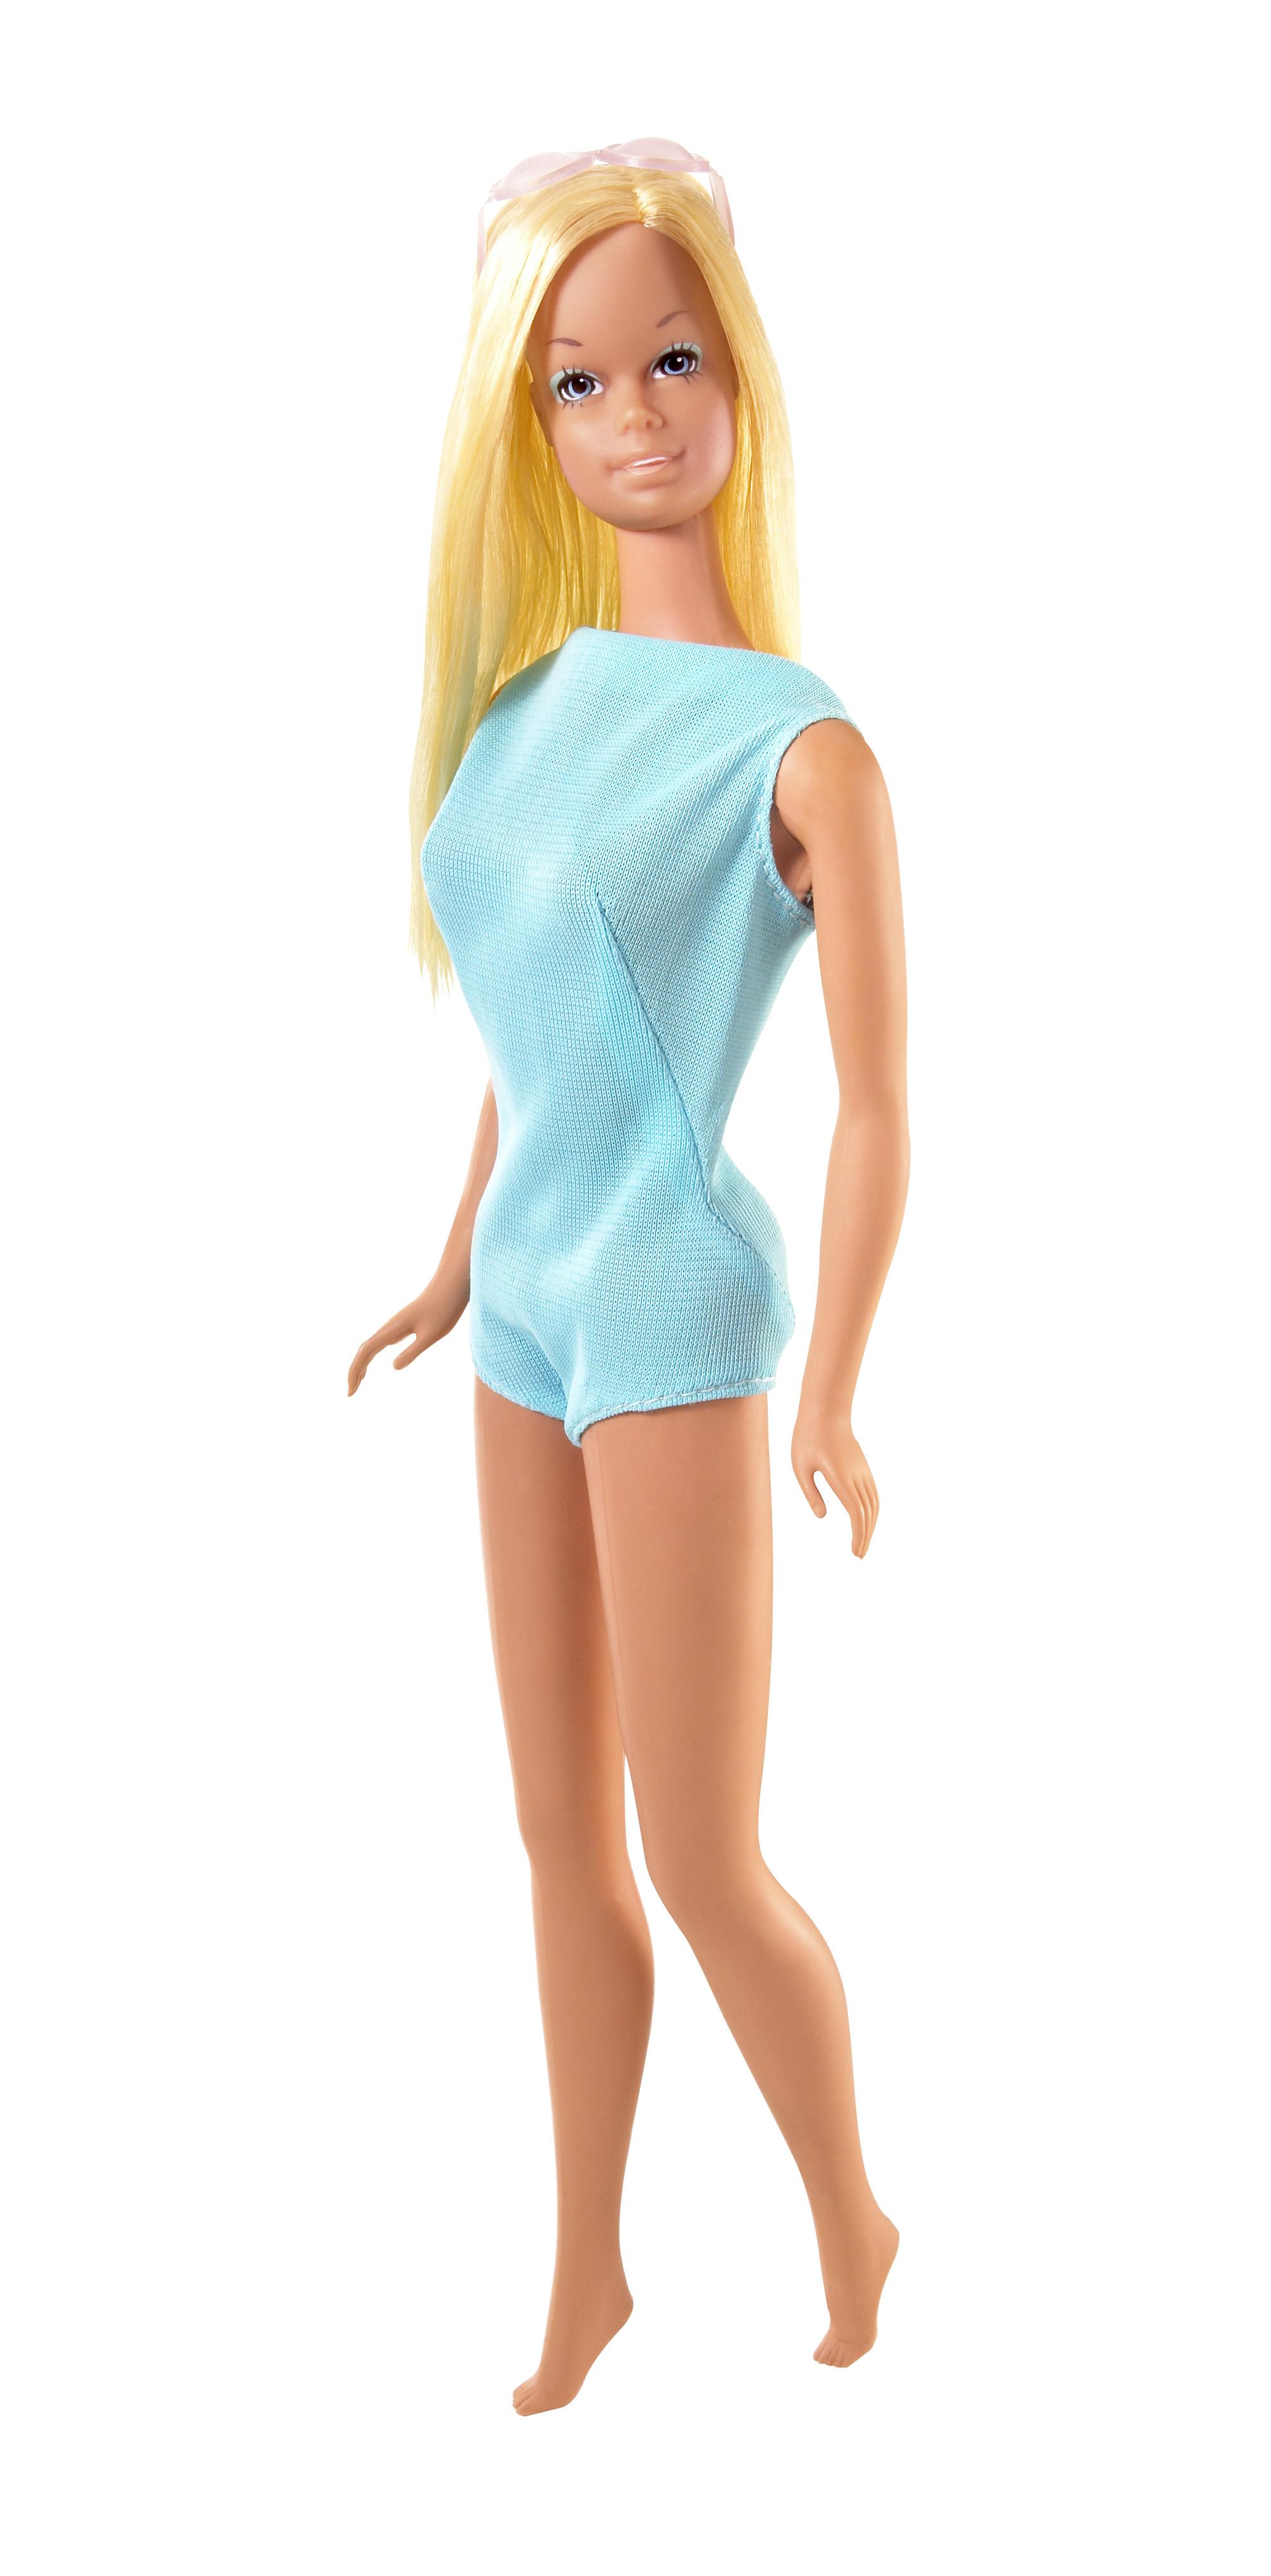 Barbie in versione Malibu (1971), con la pelle abbronzata, lucenti occhiazzurri, massima espressione dello stile californiano (foto ©Mattel Inc.)